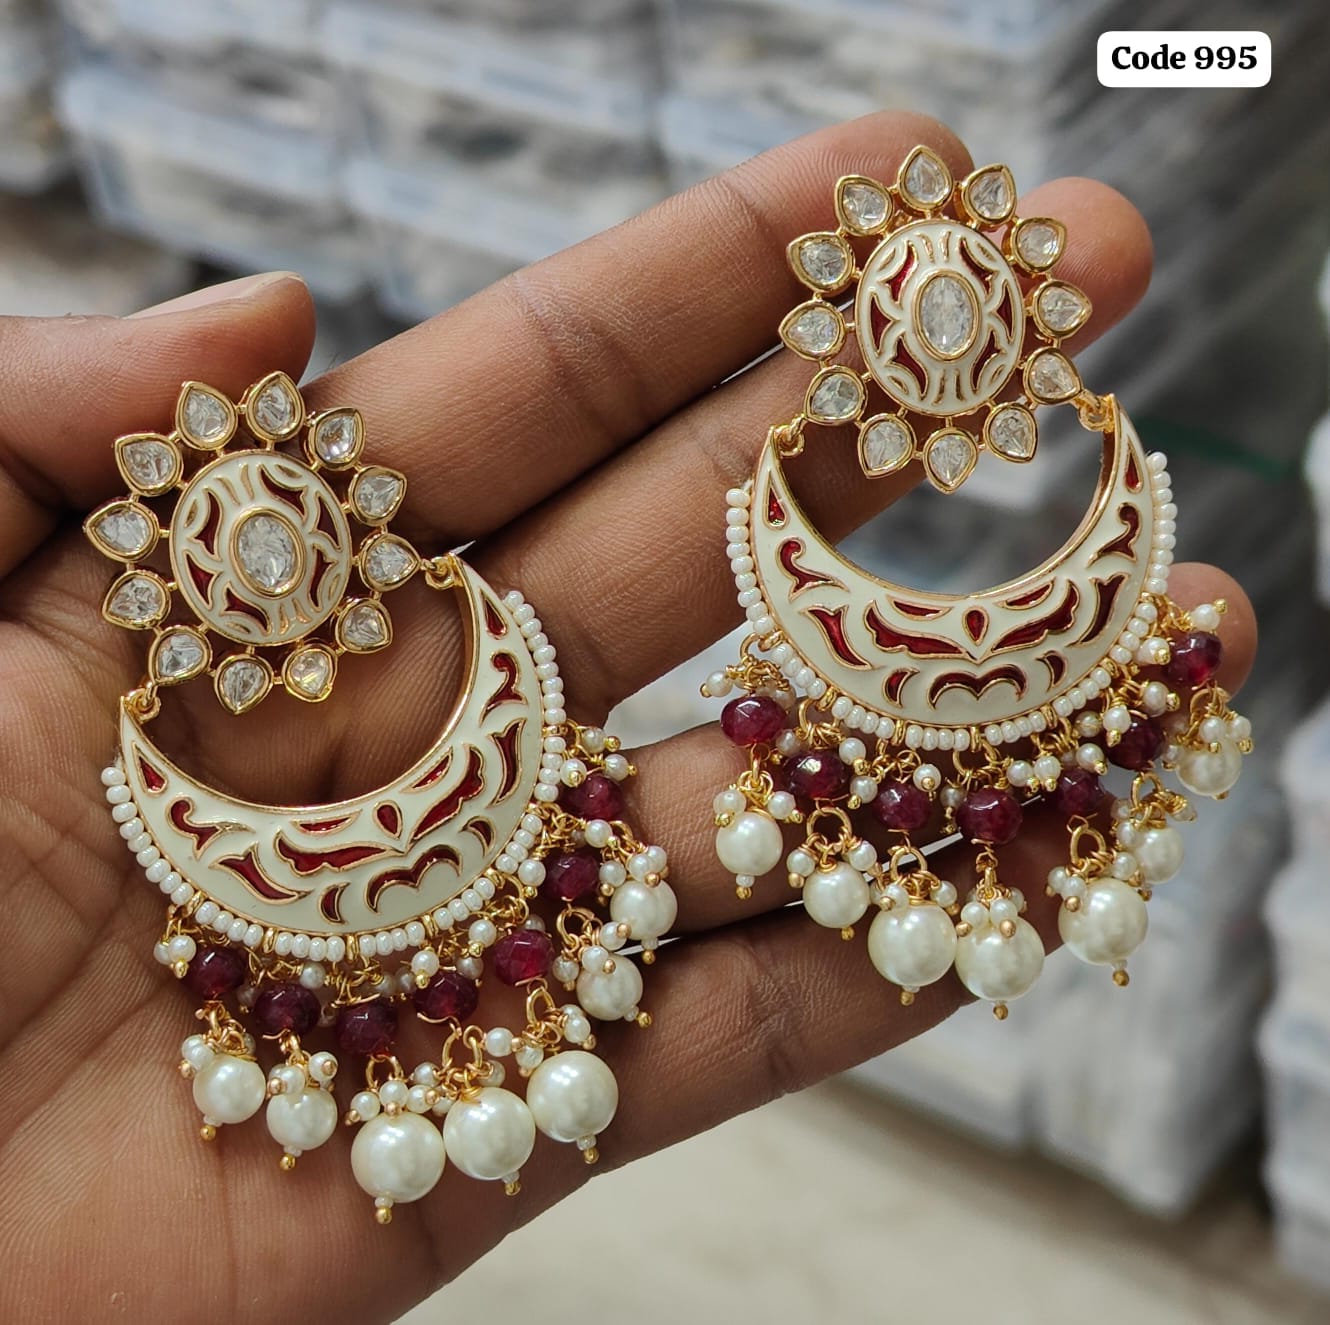 Exquisite Handpainted Meenakari Kundan Earrings: Timeless Jewelry Craftsmanship